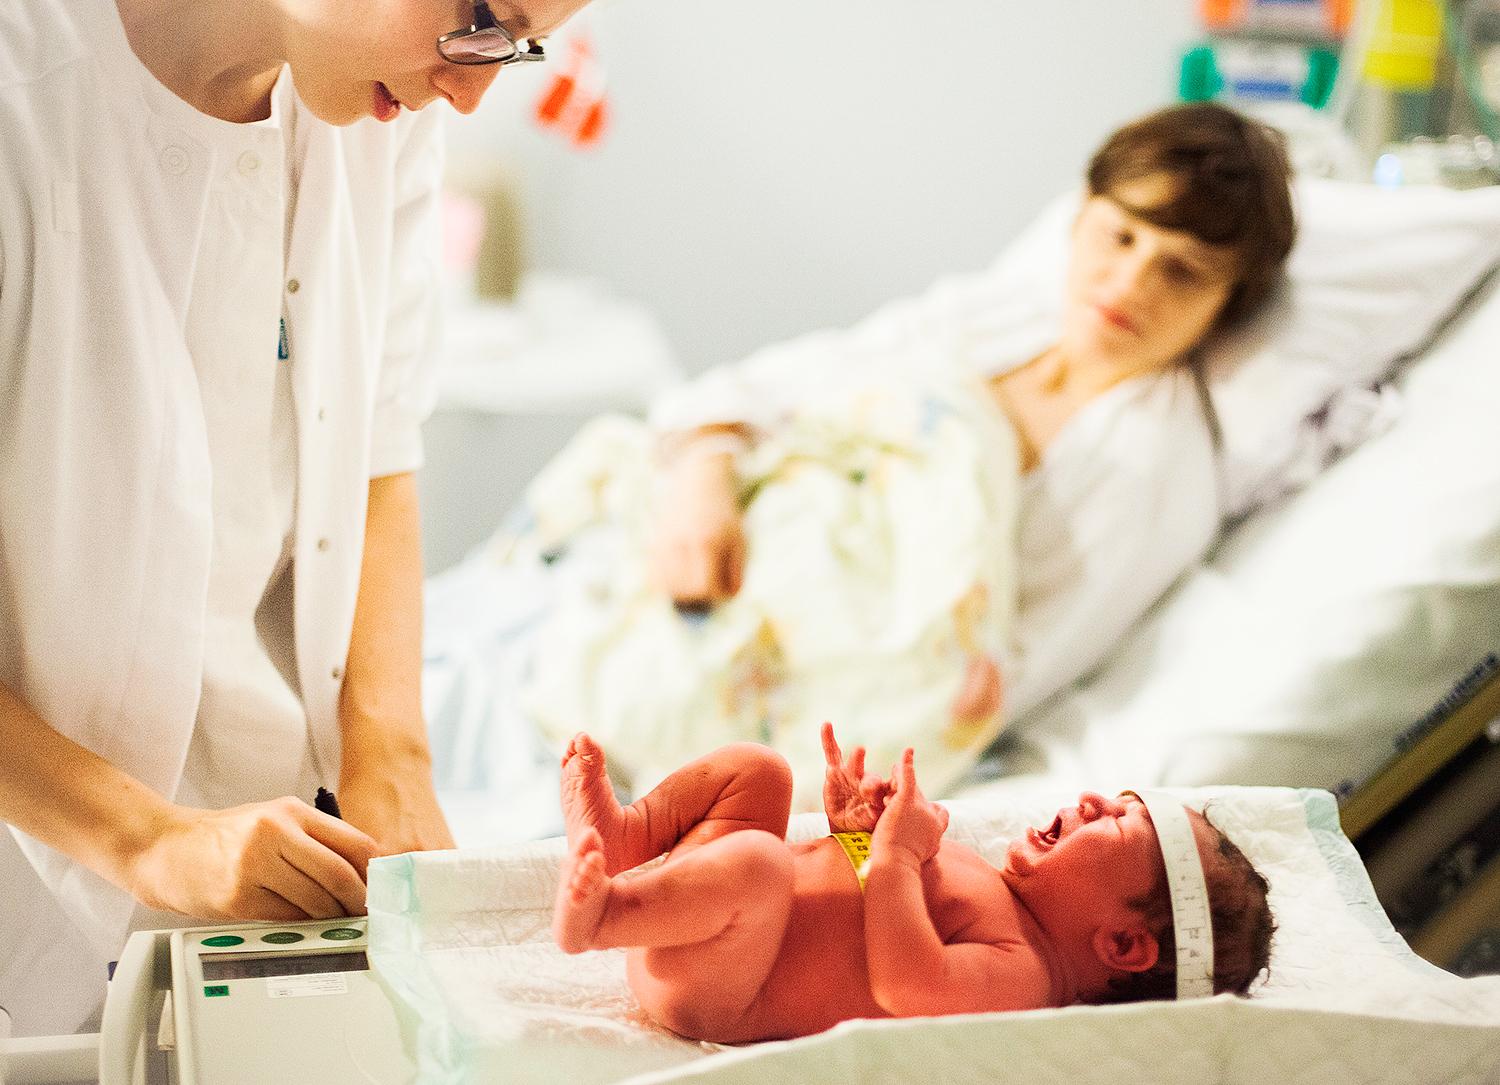 Mer fokus på mamman En rutinmässig screening med ultraljud efter förlossningen skulle kunna hitta eventuella skador snabbt, enligt överläkaren Eva Uustal.